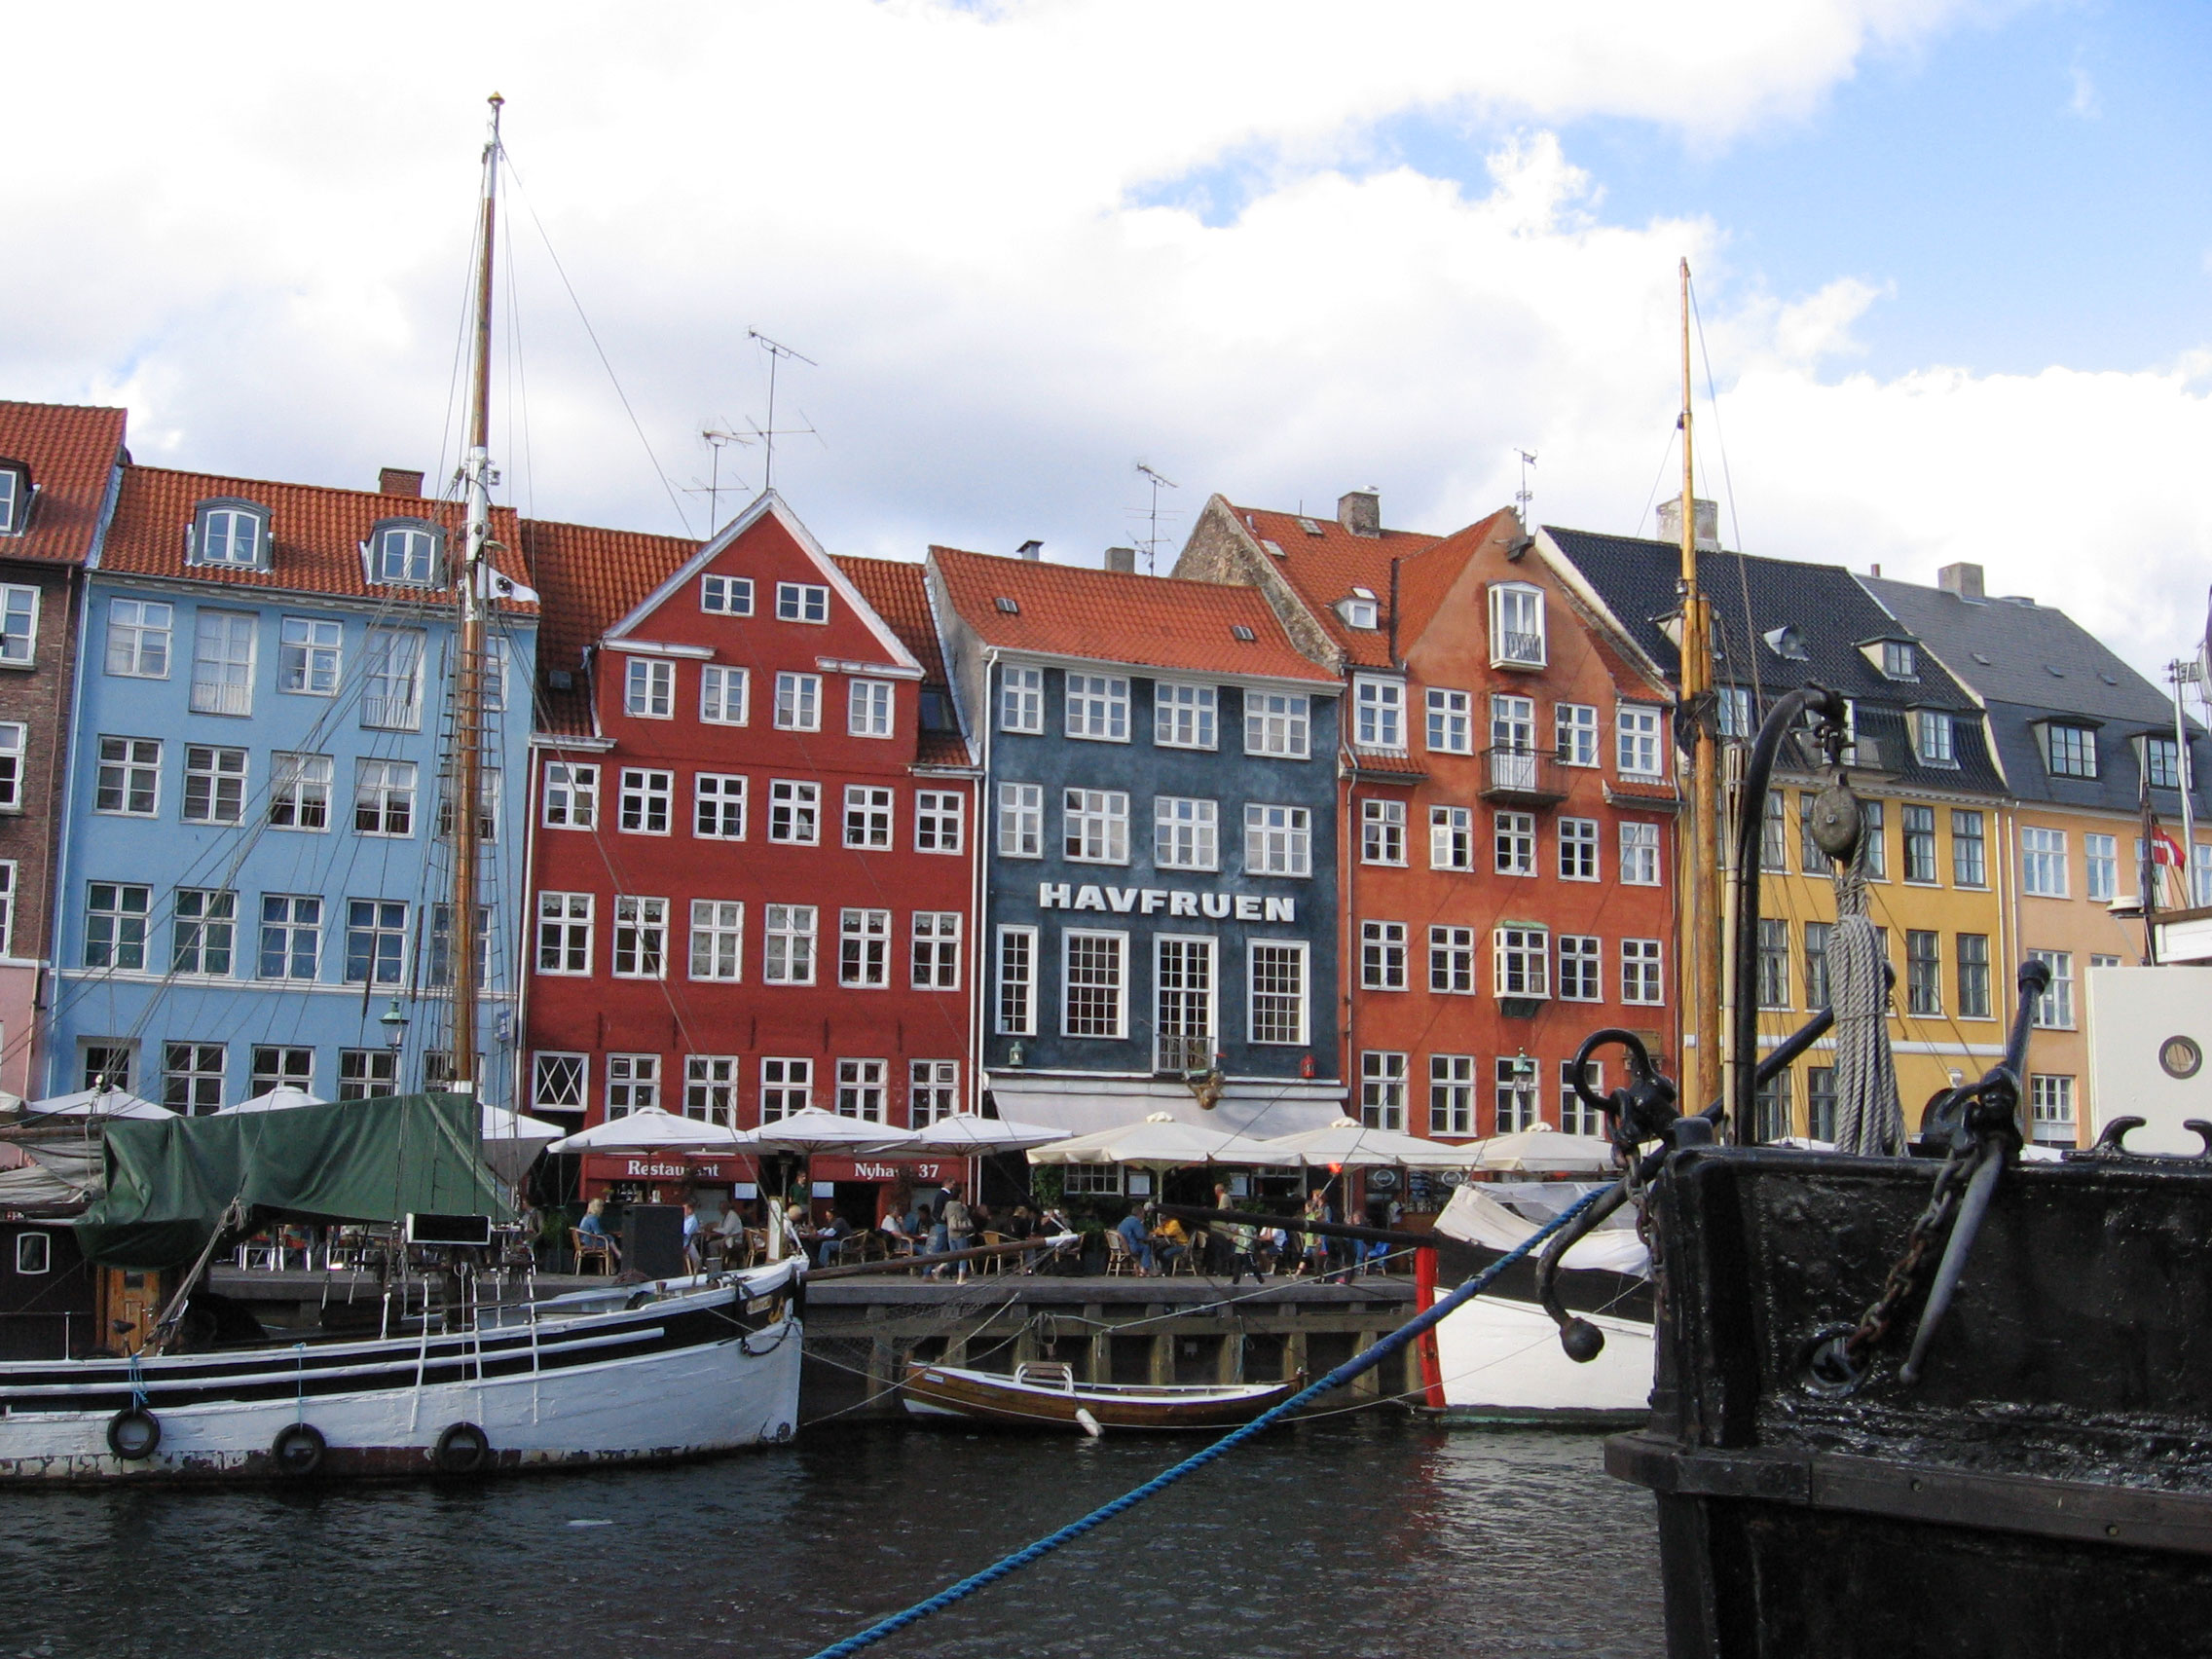 Copenhagen: The 'new' harbour